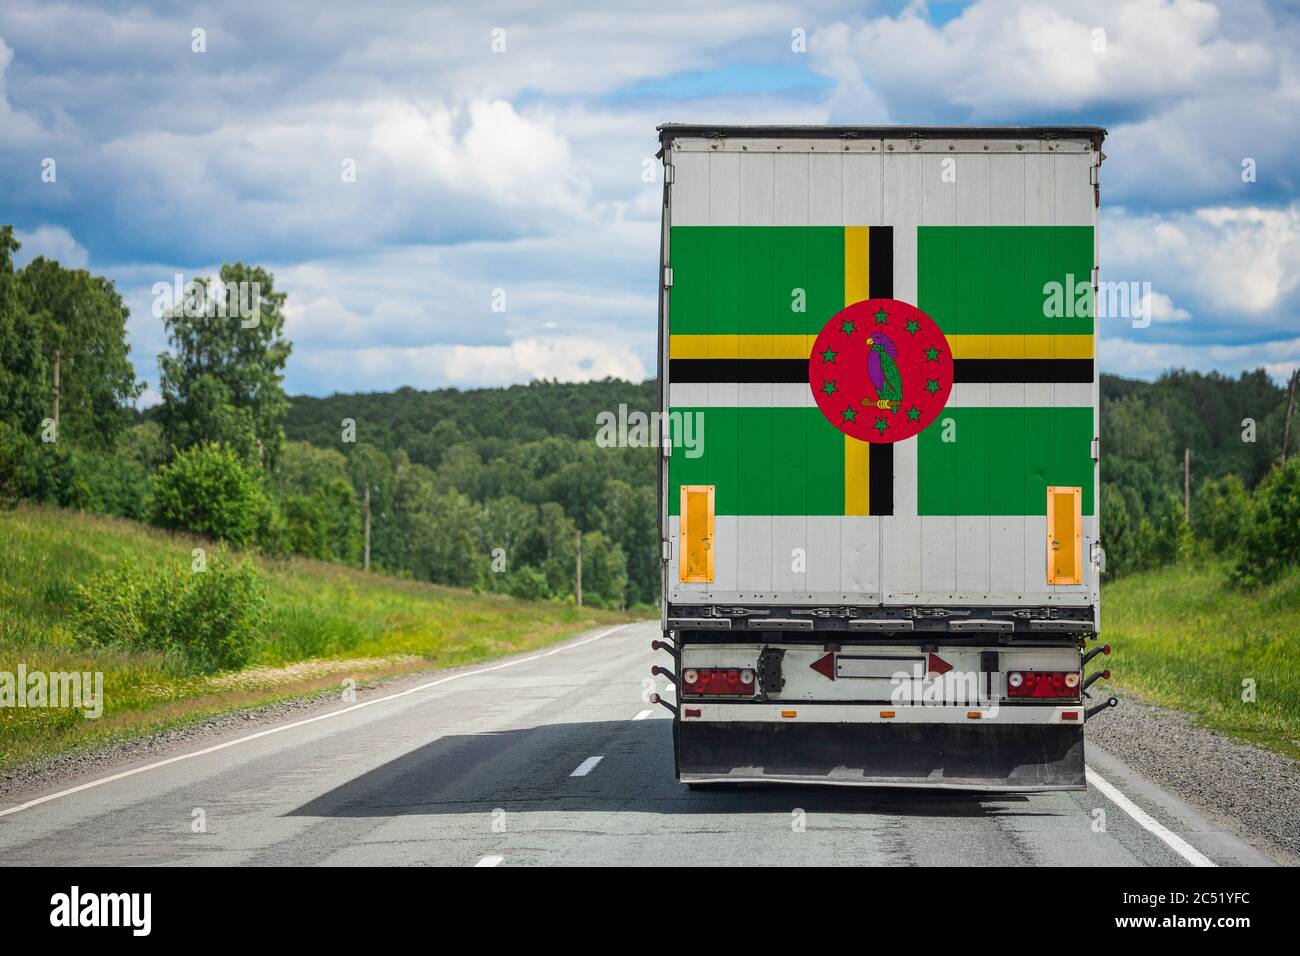 Un camion avec le drapeau national de la Dominique représenté sur la porte arrière transporte des marchandises vers un autre pays le long de la route. Concept d'exportation-importation,tr Banque D'Images